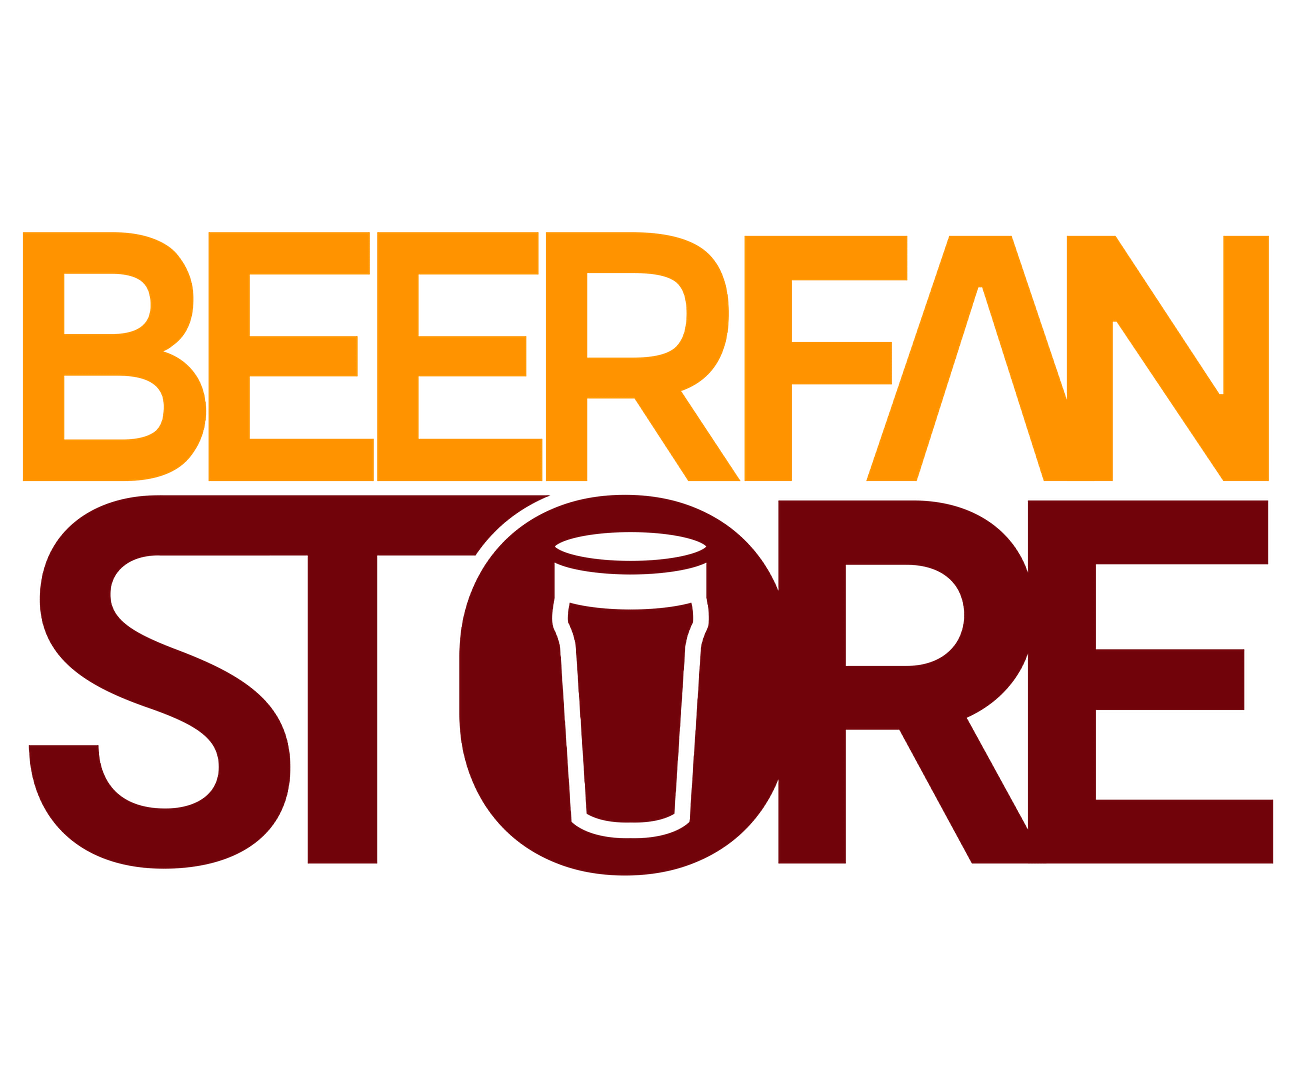 Beer FanStore